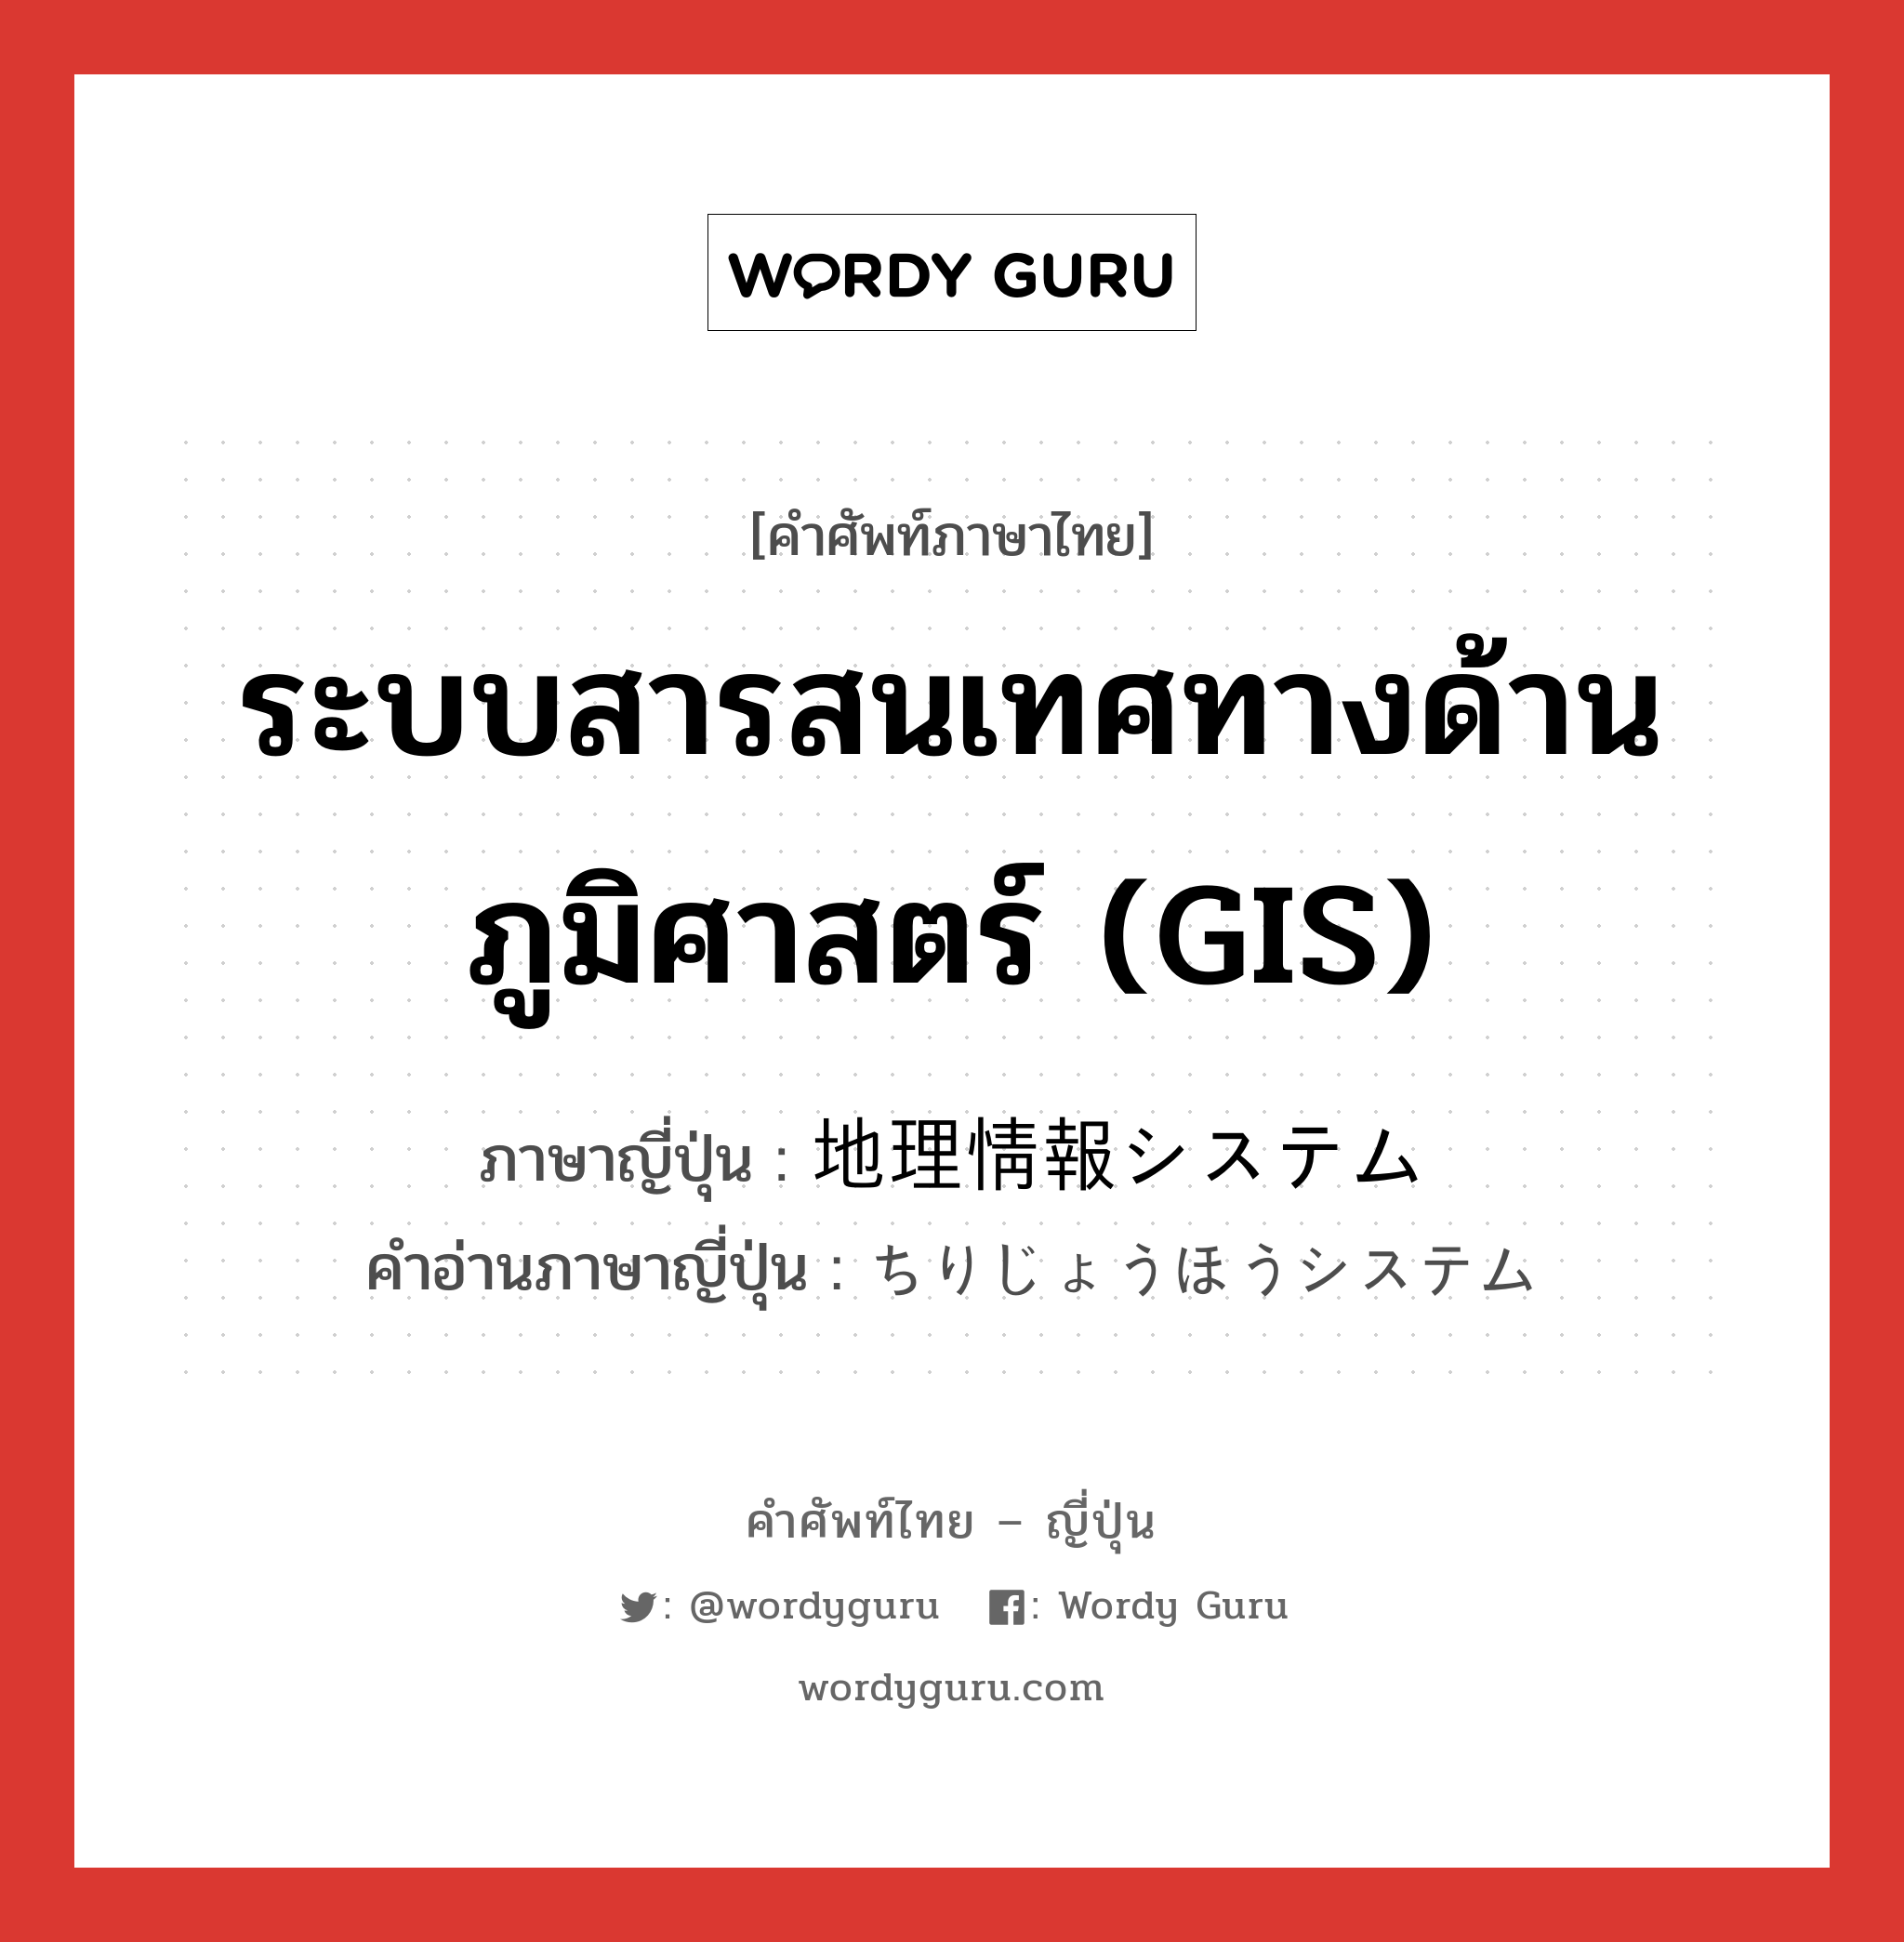 ระบบสารสนเทศทางด้านภูมิศาสตร์ (GIS) ภาษาญี่ปุ่นคืออะไร, คำศัพท์ภาษาไทย - ญี่ปุ่น ระบบสารสนเทศทางด้านภูมิศาสตร์ (GIS) ภาษาญี่ปุ่น 地理情報システム คำอ่านภาษาญี่ปุ่น ちりじょうほうシステム หมวด n หมวด n